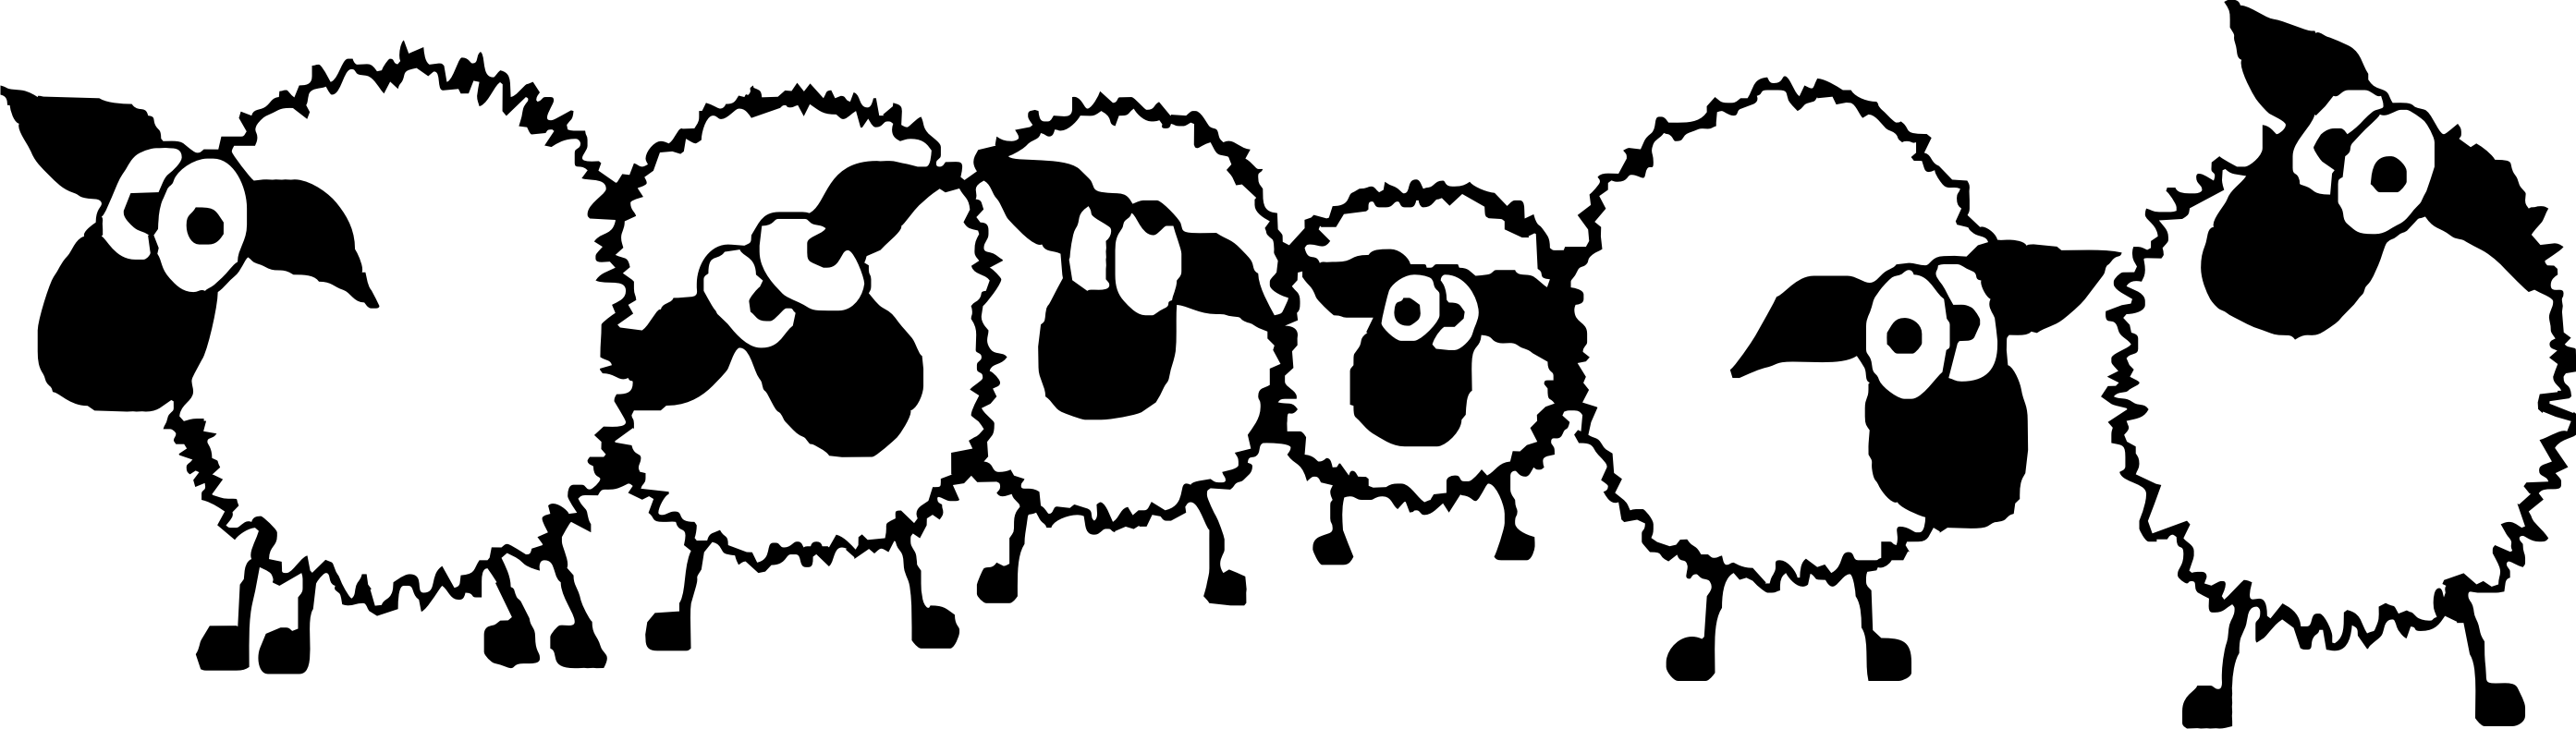 sheep clipart group sheep